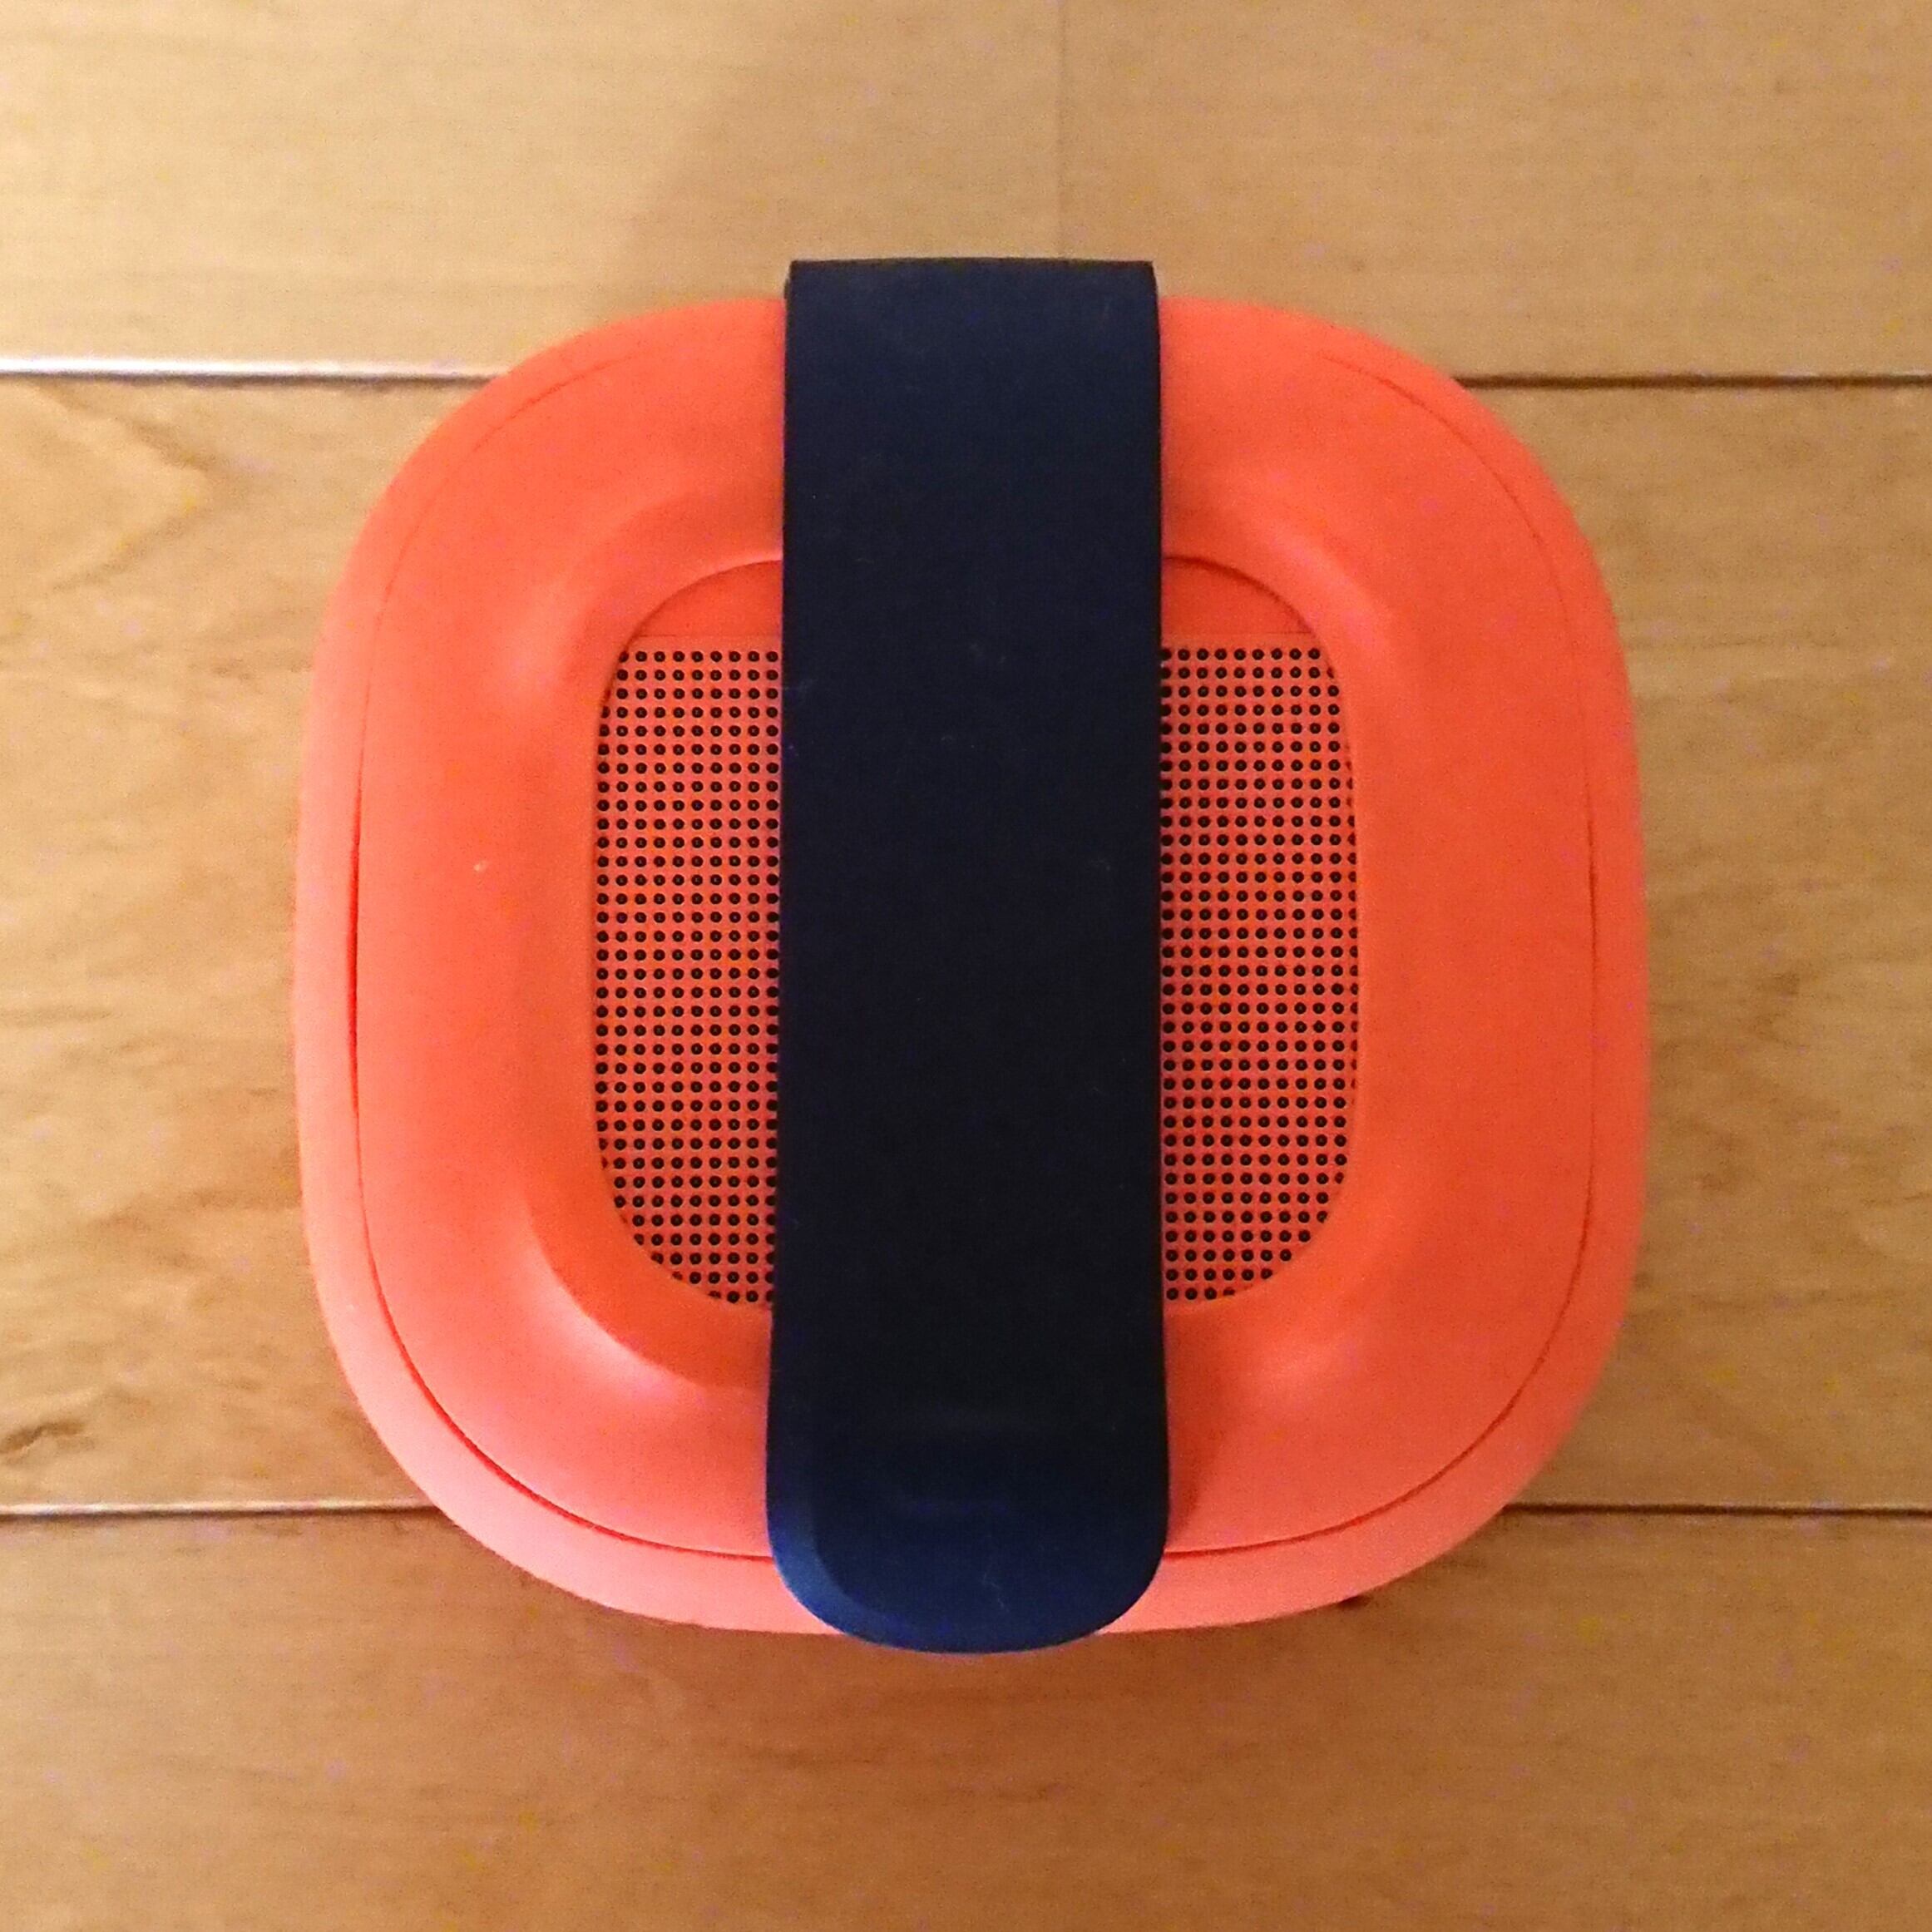 アウトドアに最適‼】Bose SoundLink Micro Bluetooth speaker ブライト